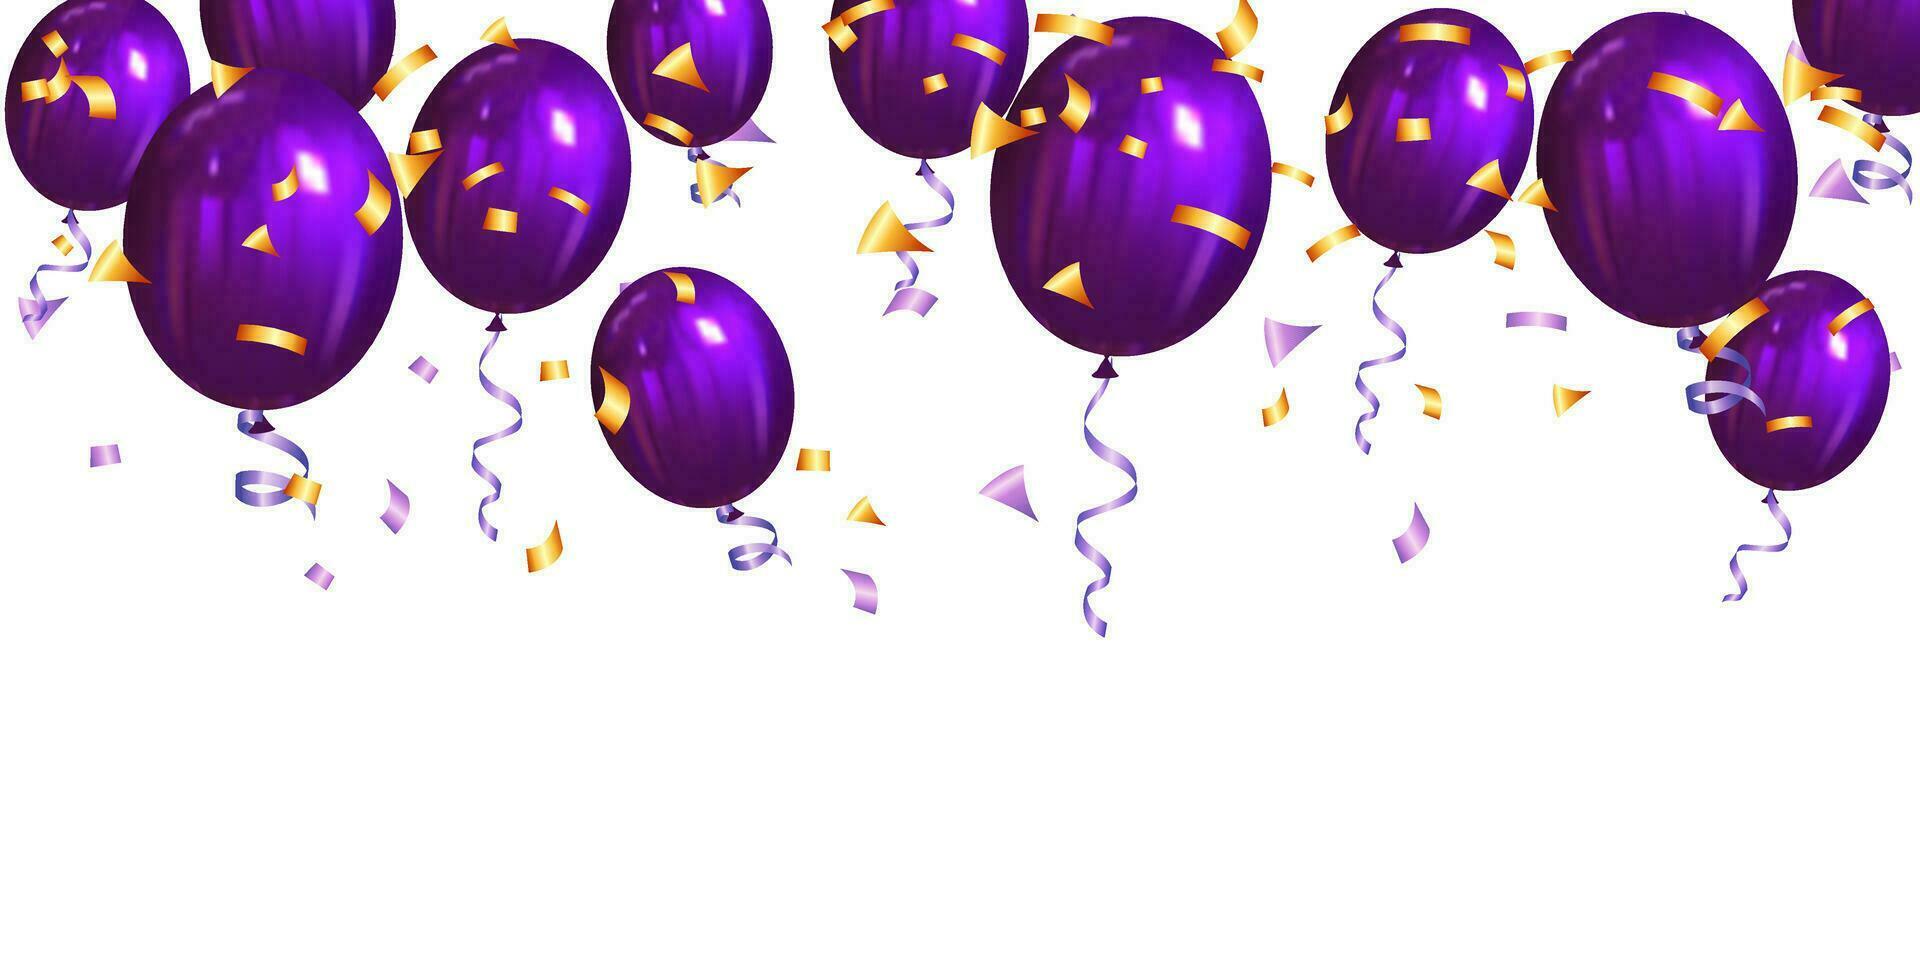 roxa balões com fitas e ouro confete. vetor ilustração